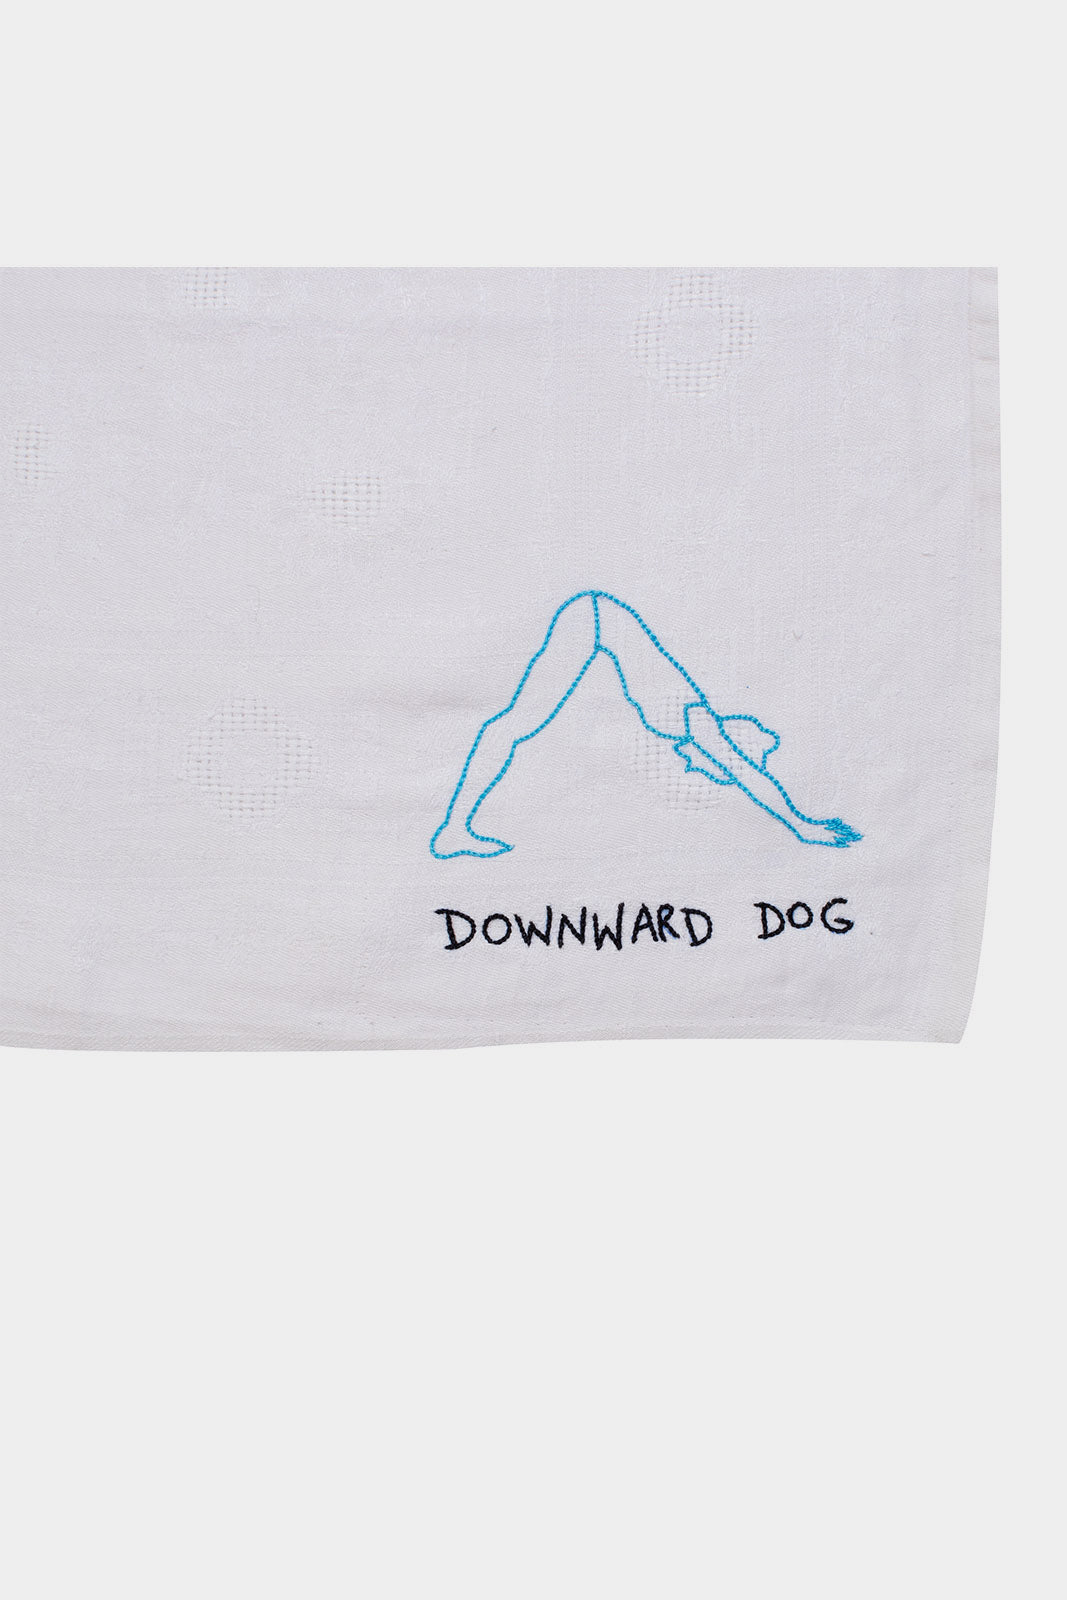 Downward Dog Embroidered Napkin